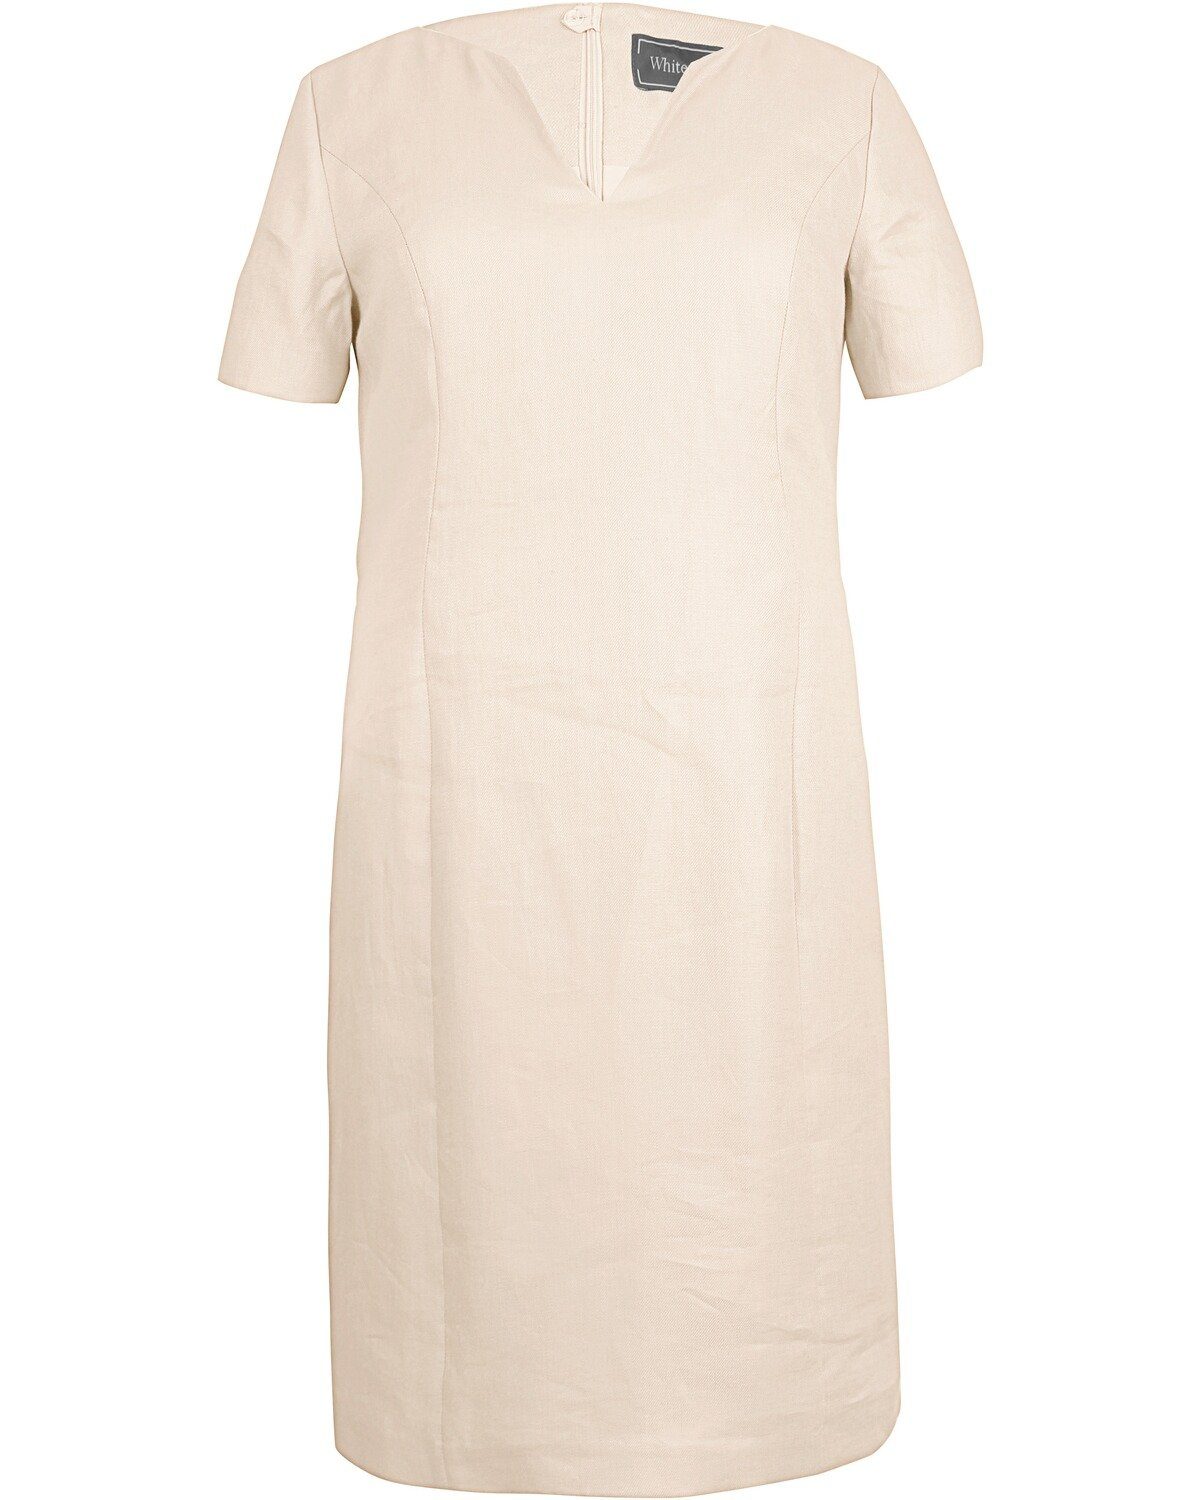 White Label Etuikleid Leinenkleid Weiß | Etuikleider